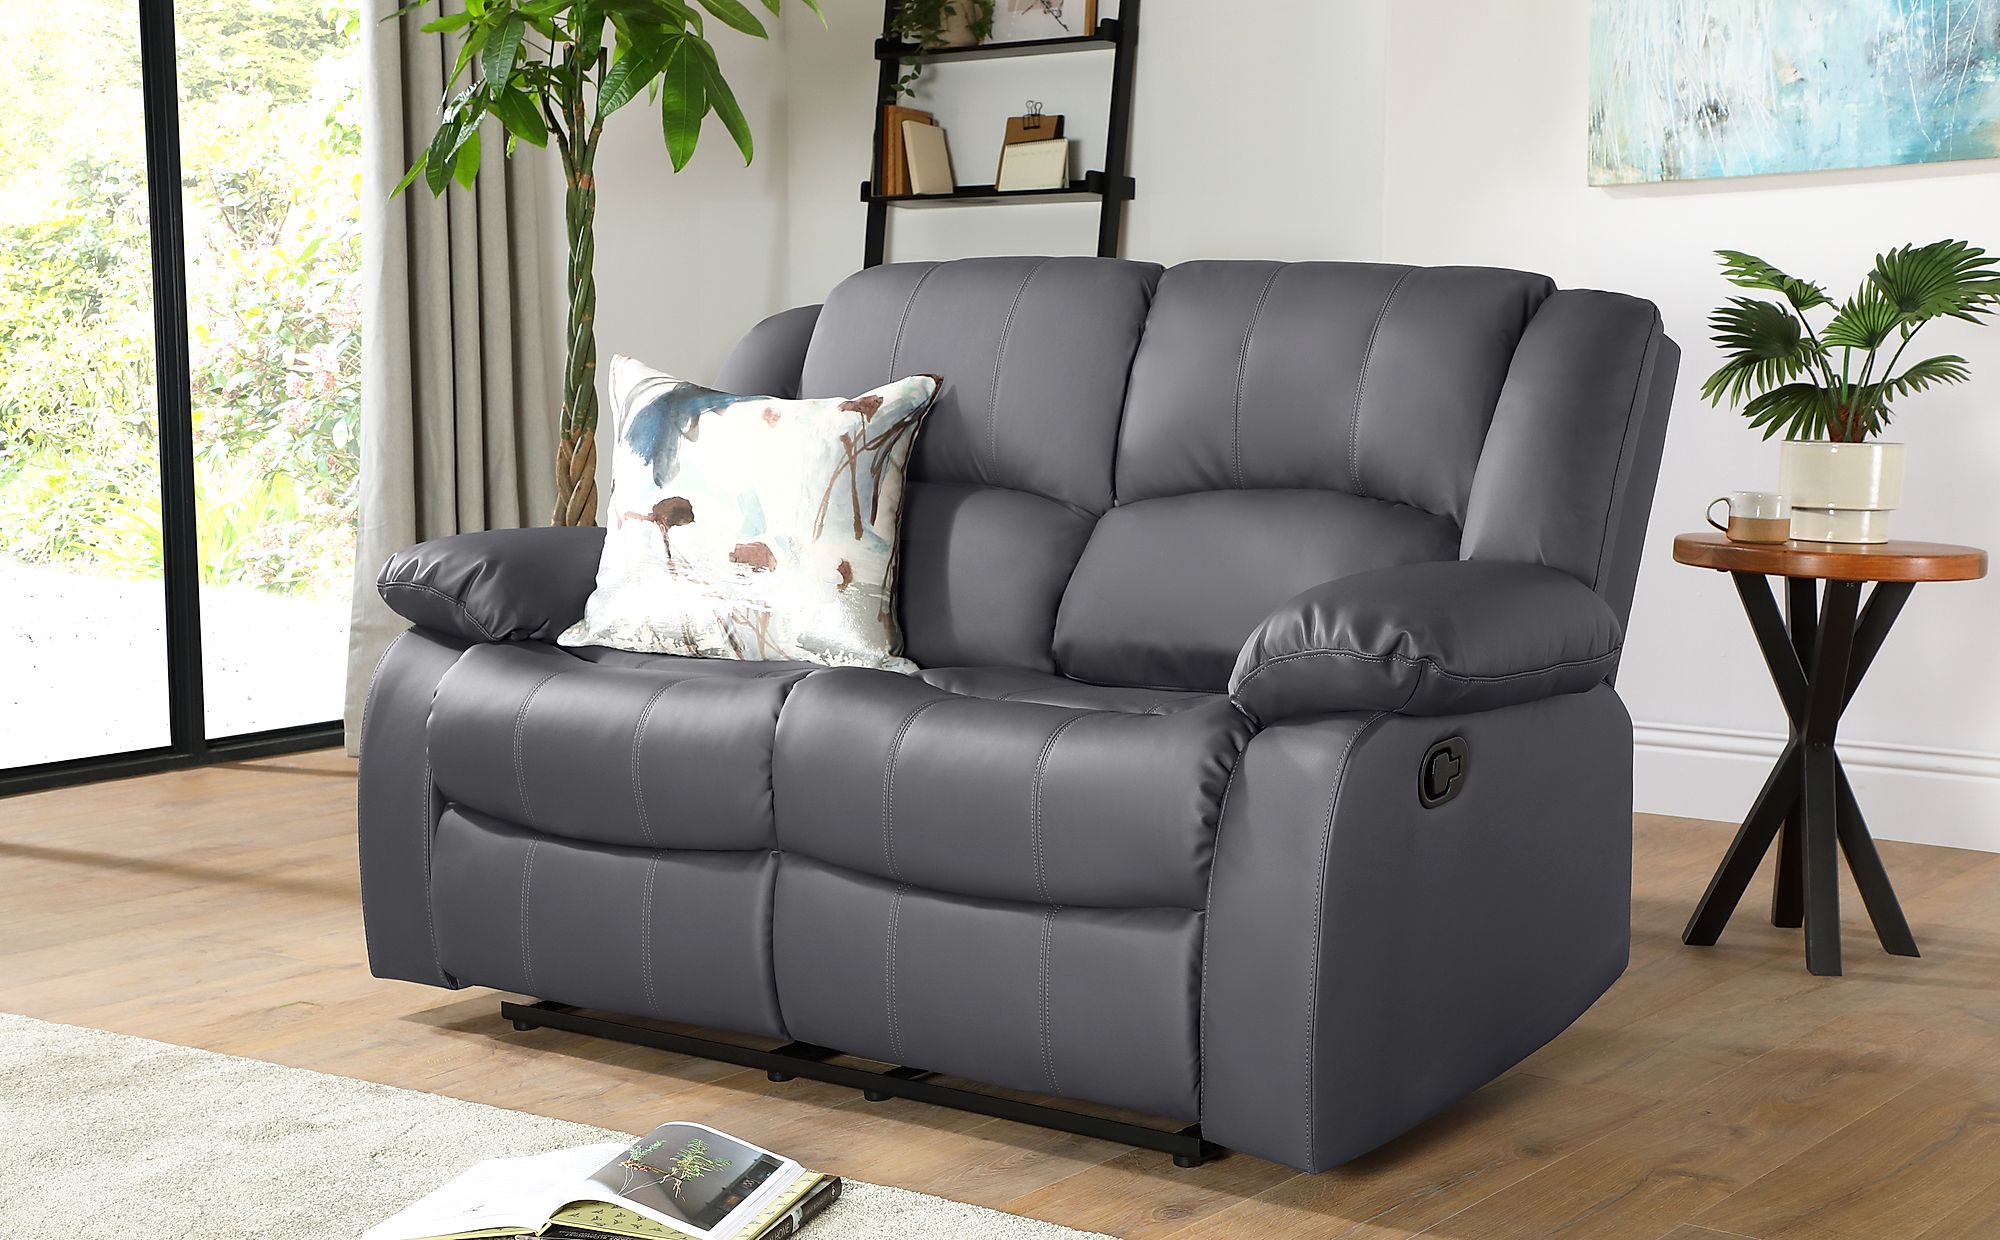 grey recliner sofa bed